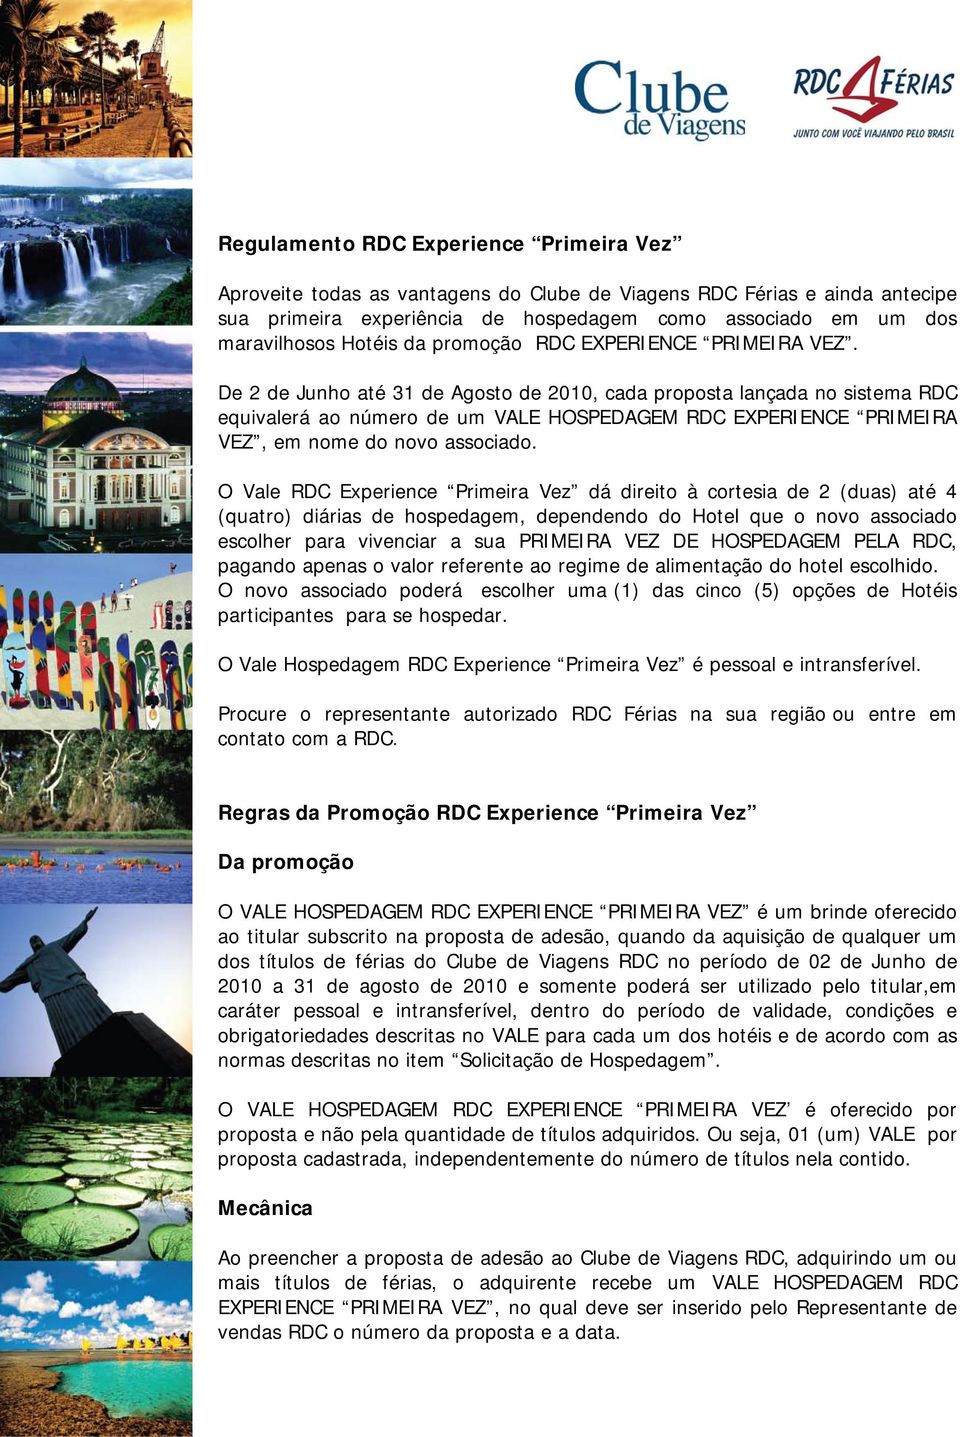 De 2 de Junho até 31 de Agosto de 2010, cada proposta lançada no sistema RDC equivalerá ao número de um VALE HOSPEDAGEM RDC EXPERIENCE PRIMEIRA VEZ, em nome do novo associado.